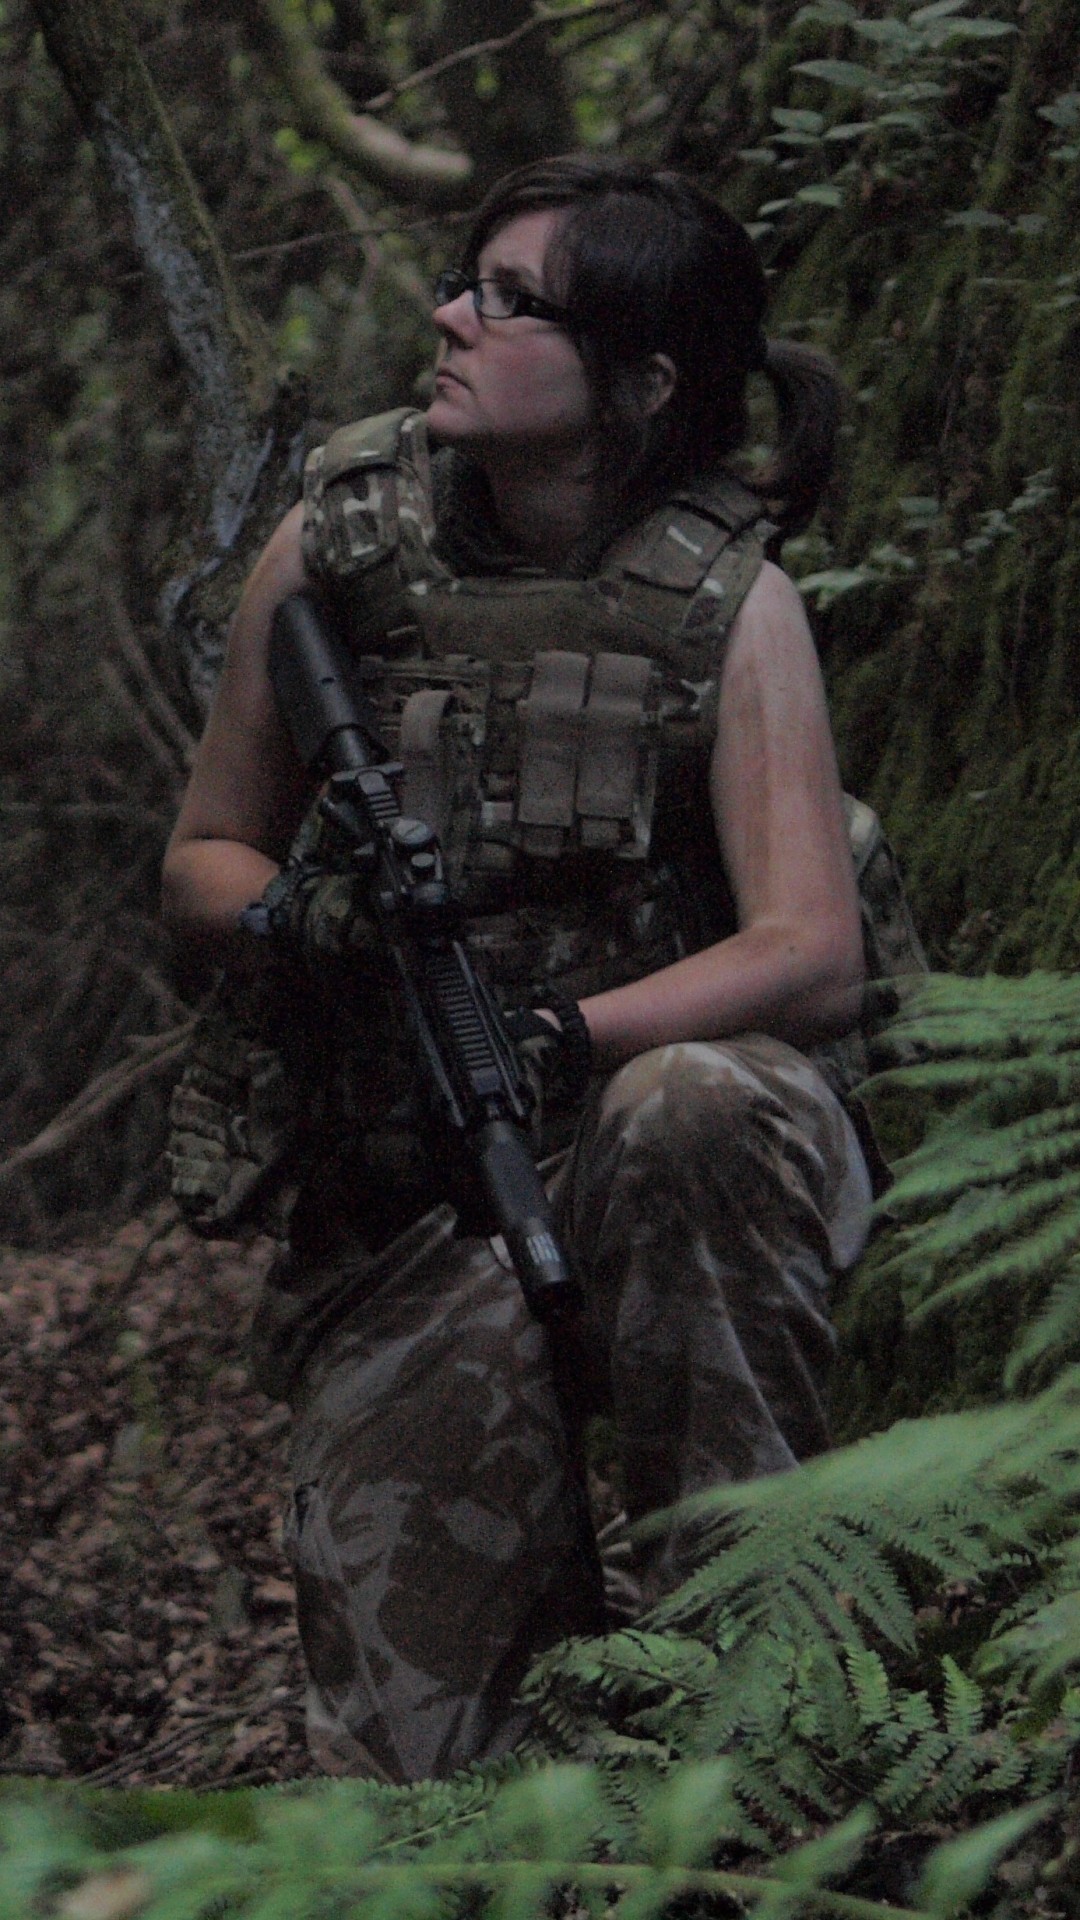 fond d'écran filles et armes à feu,soldat,jungle,camouflage,camouflage militaire,airsoft